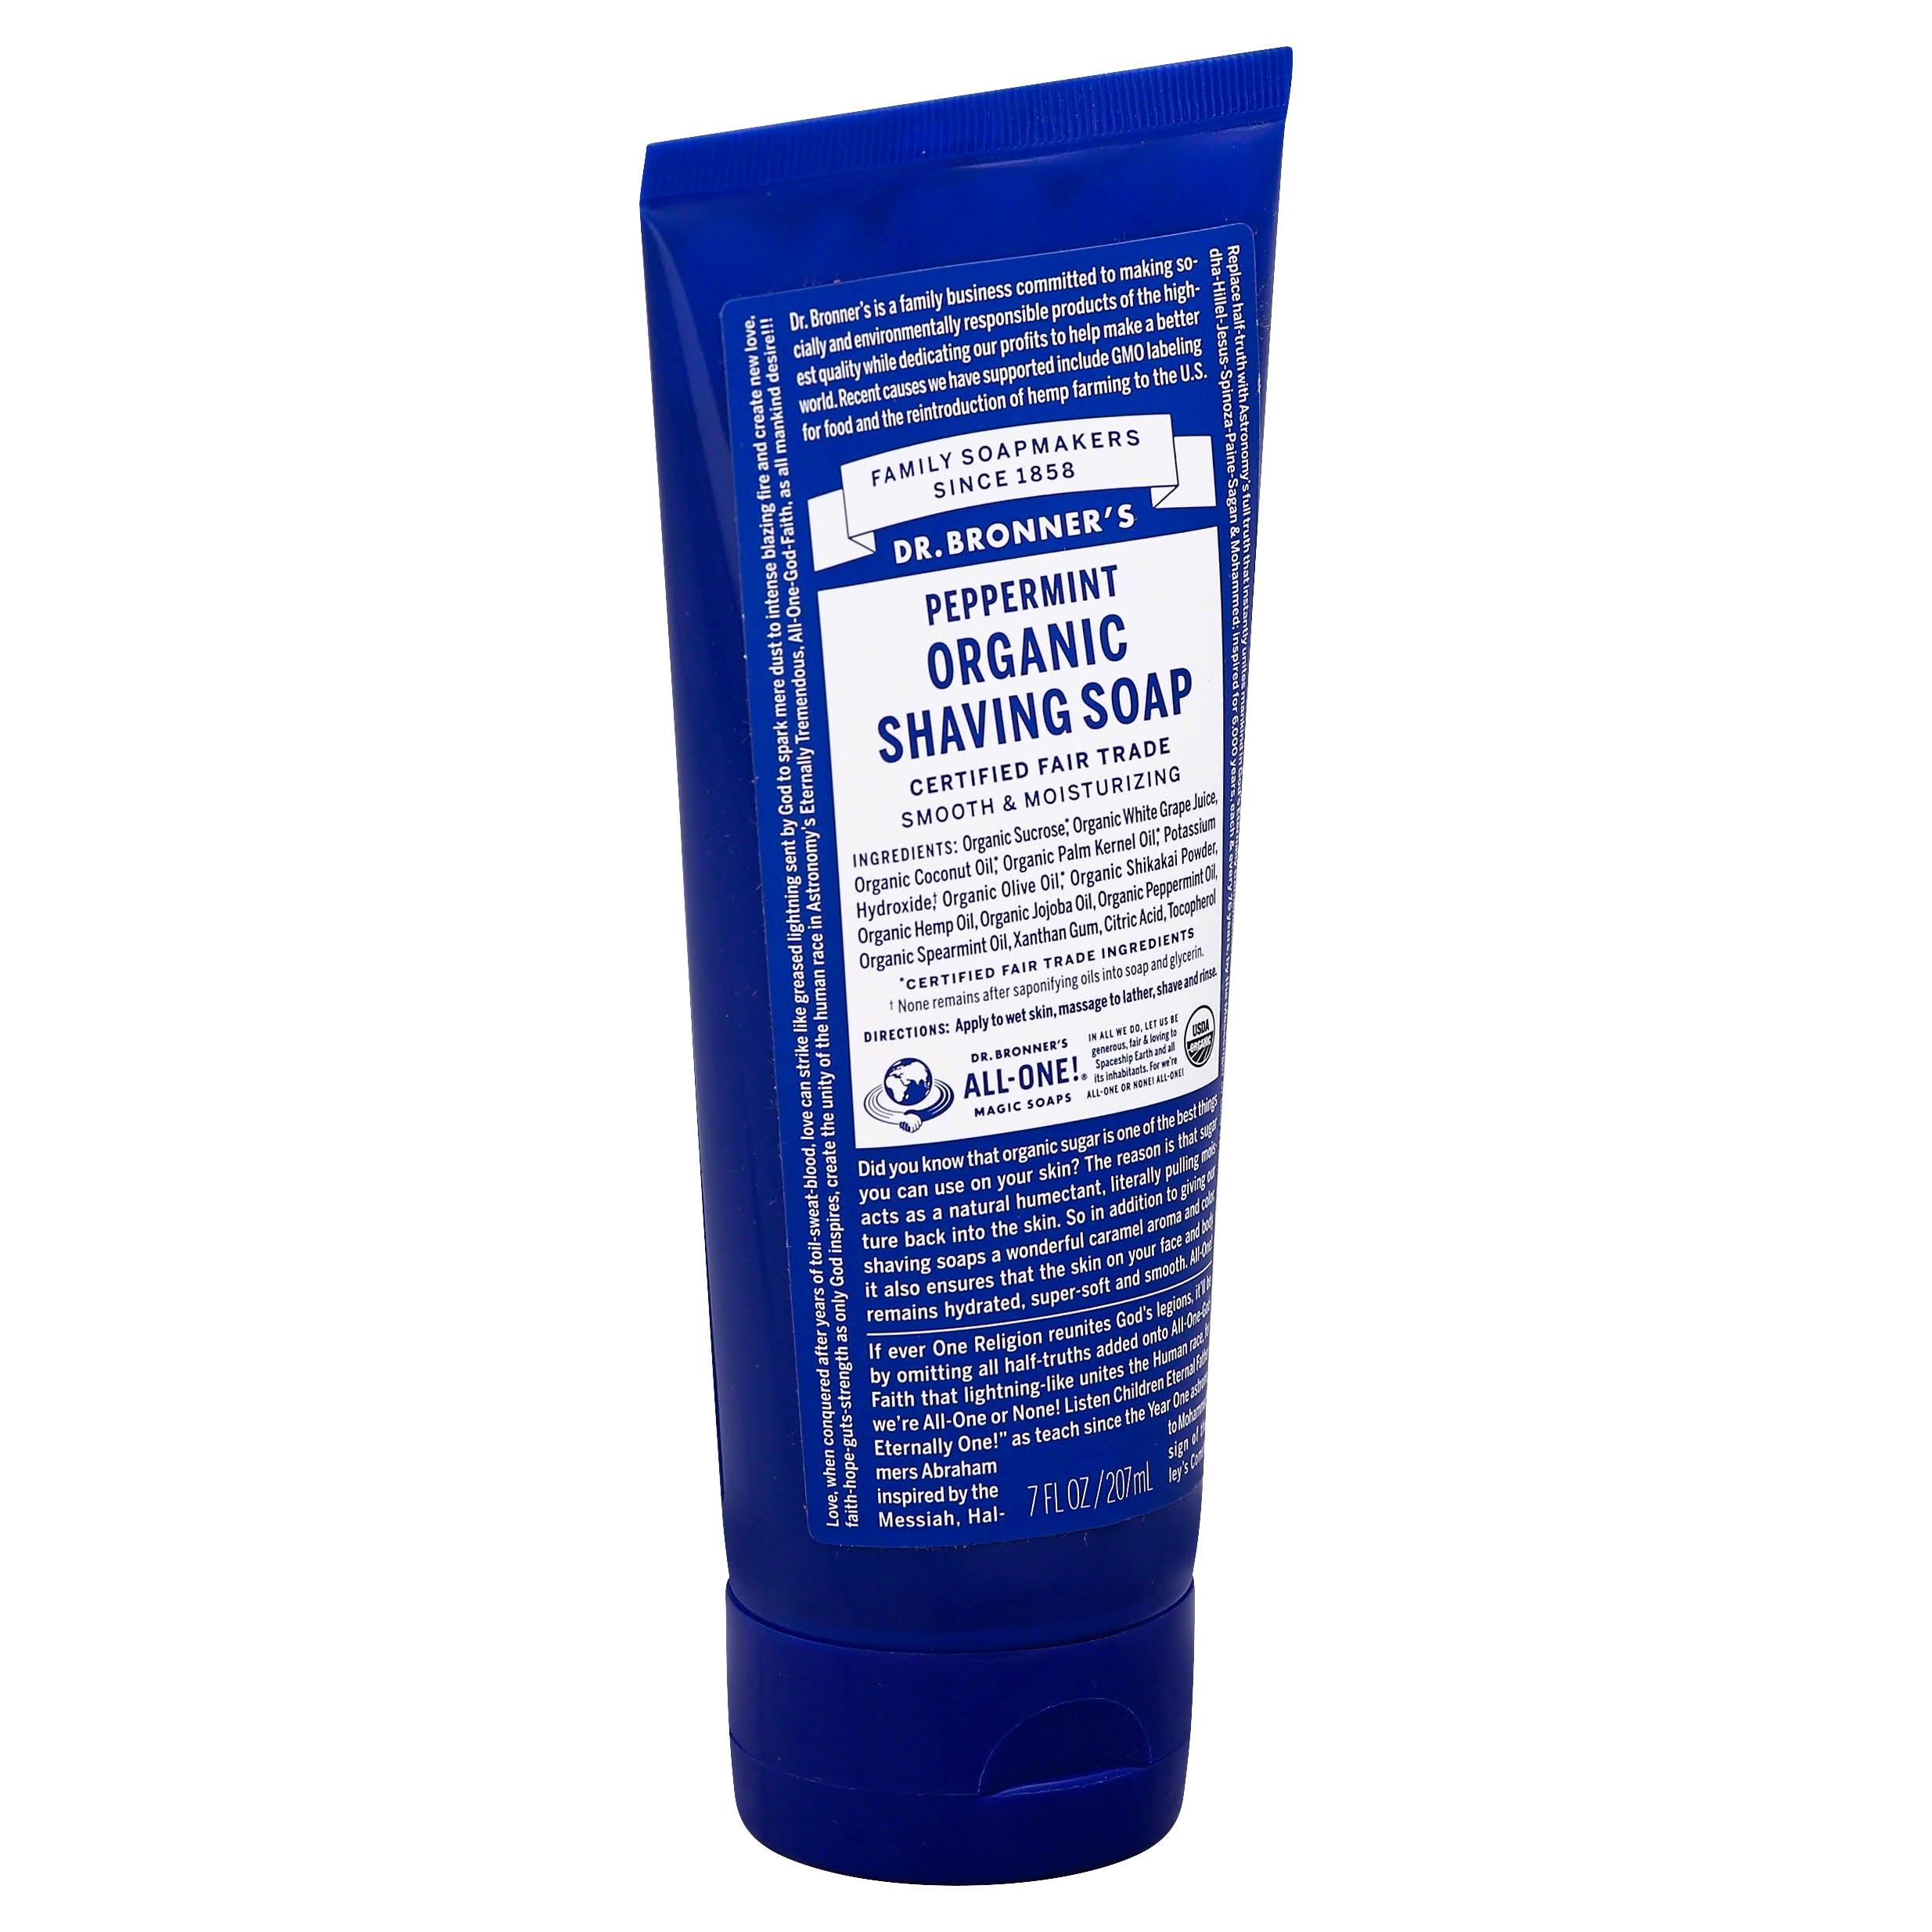 Dr. Bronner's Magic Organic Shaving Soap Gel - Spearmint Peppermint, 208ml